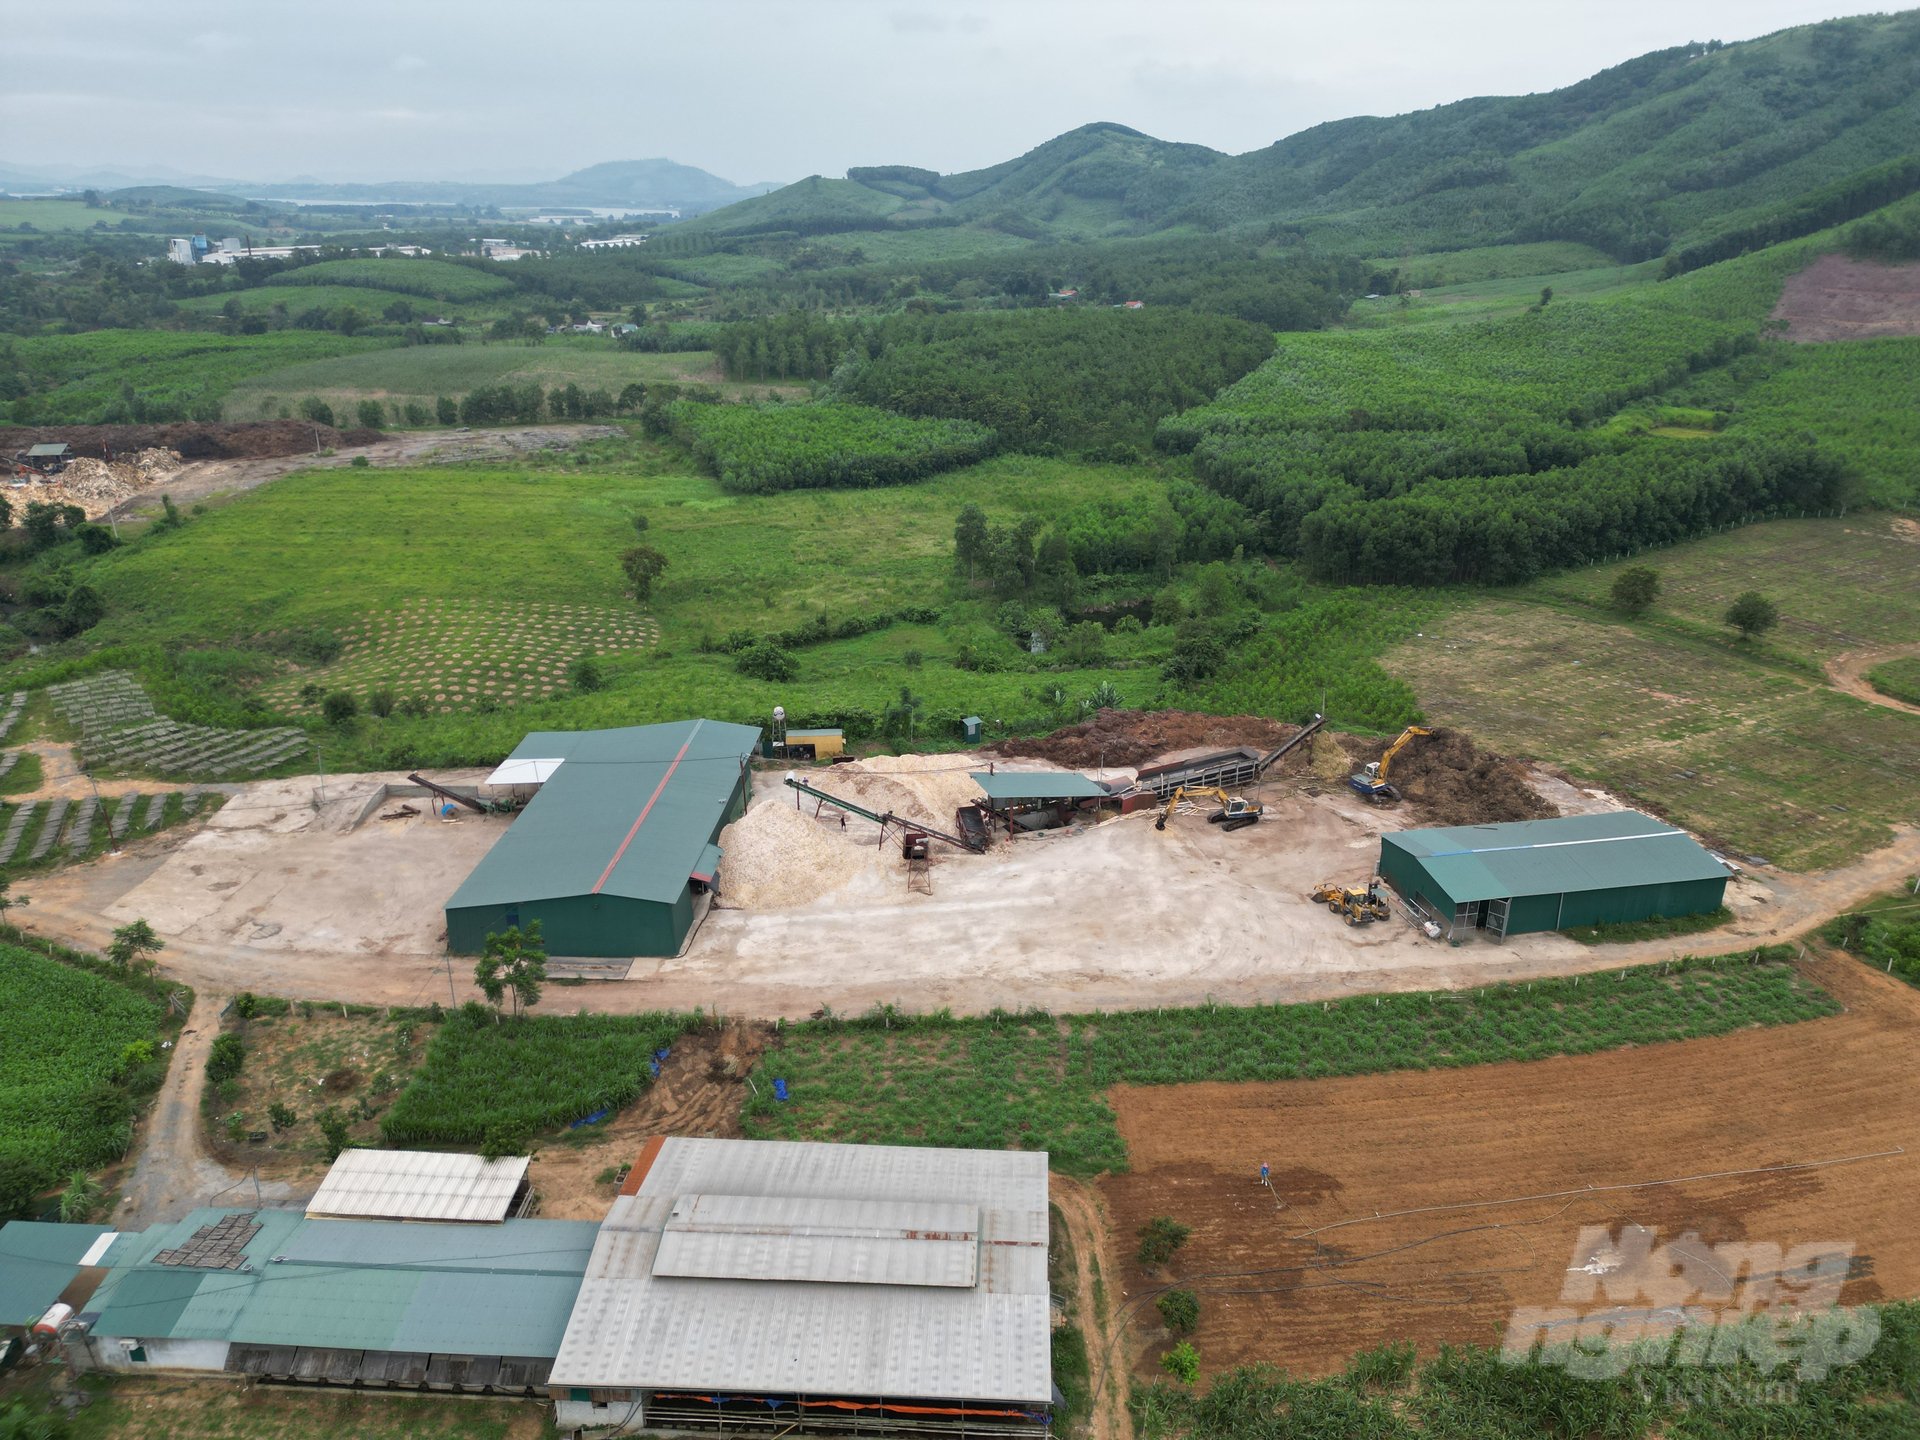 Cơ sở chế biến gỗ keo của ông Trần Viết Huệ tại thôn Chôi Trờn, xã Bãi Trành, Như Xuân, Thanh Hóa. Ảnh: ĐT.